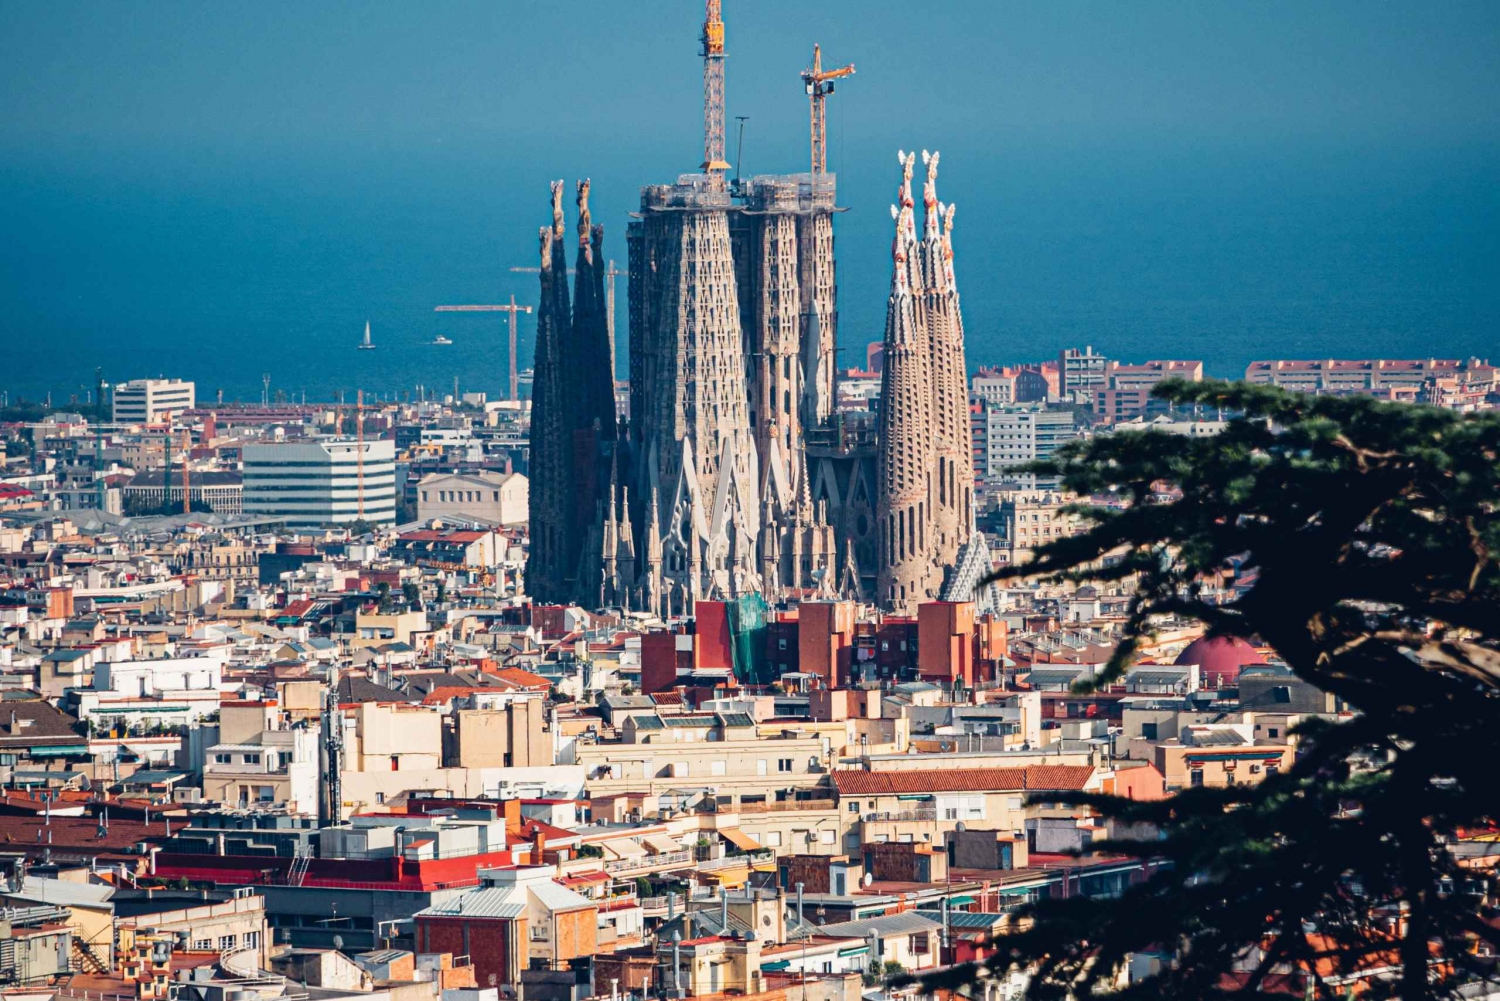 Ingressos para a Sagrada Família: Explore a obra-prima de Gaudí